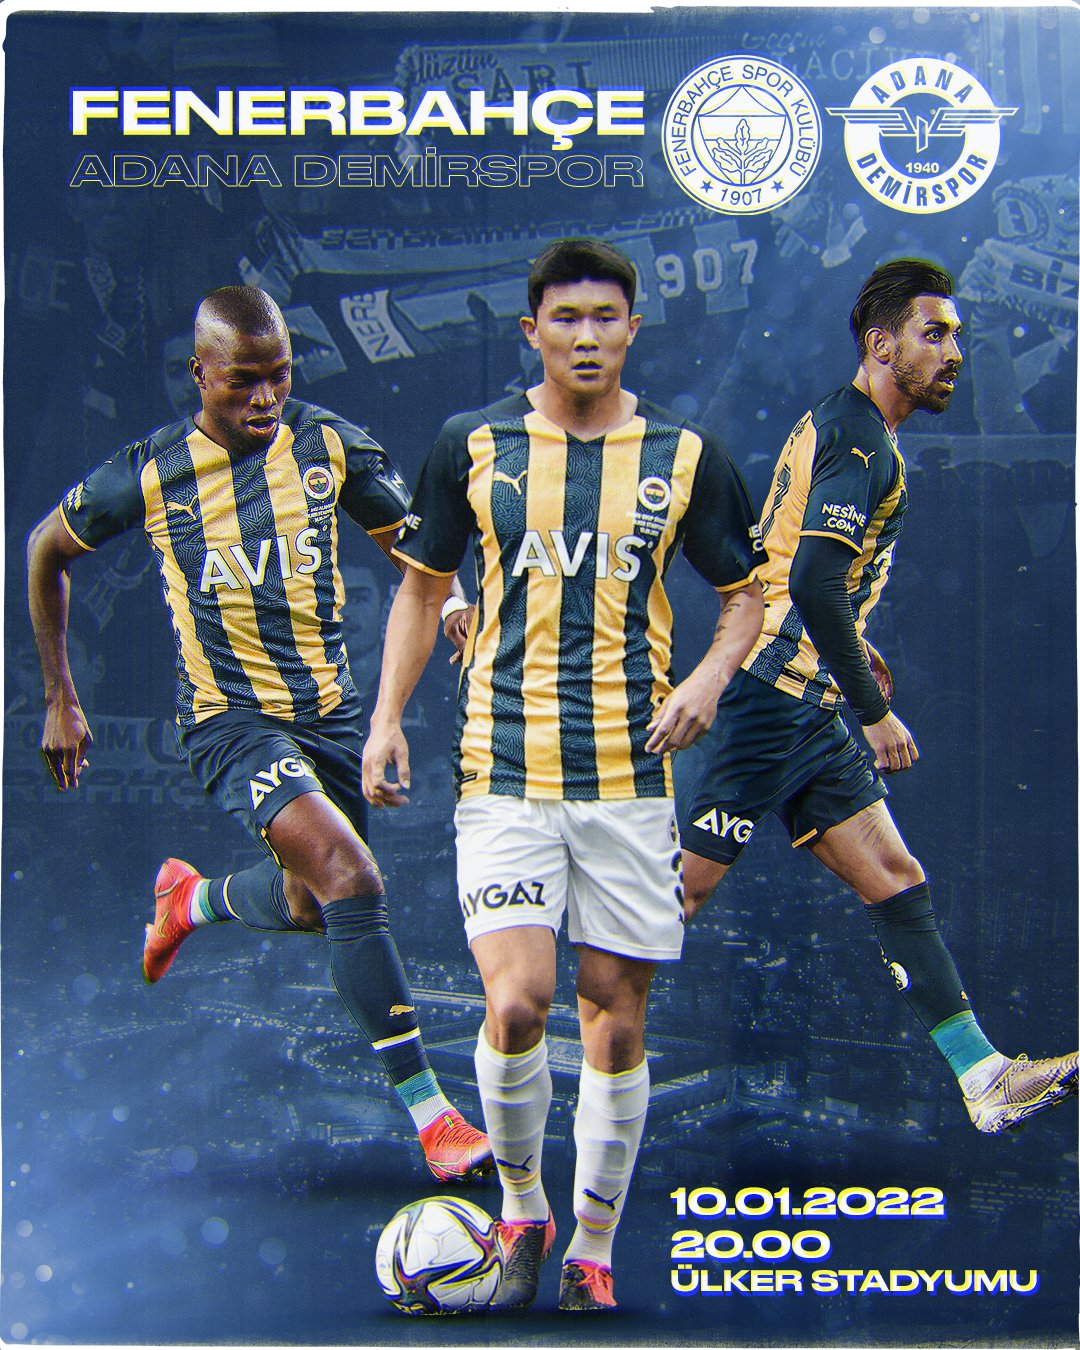 Fenerbahçe'nin Adana Demirspor Maçına Özel Hazırladığı Maç Görseli